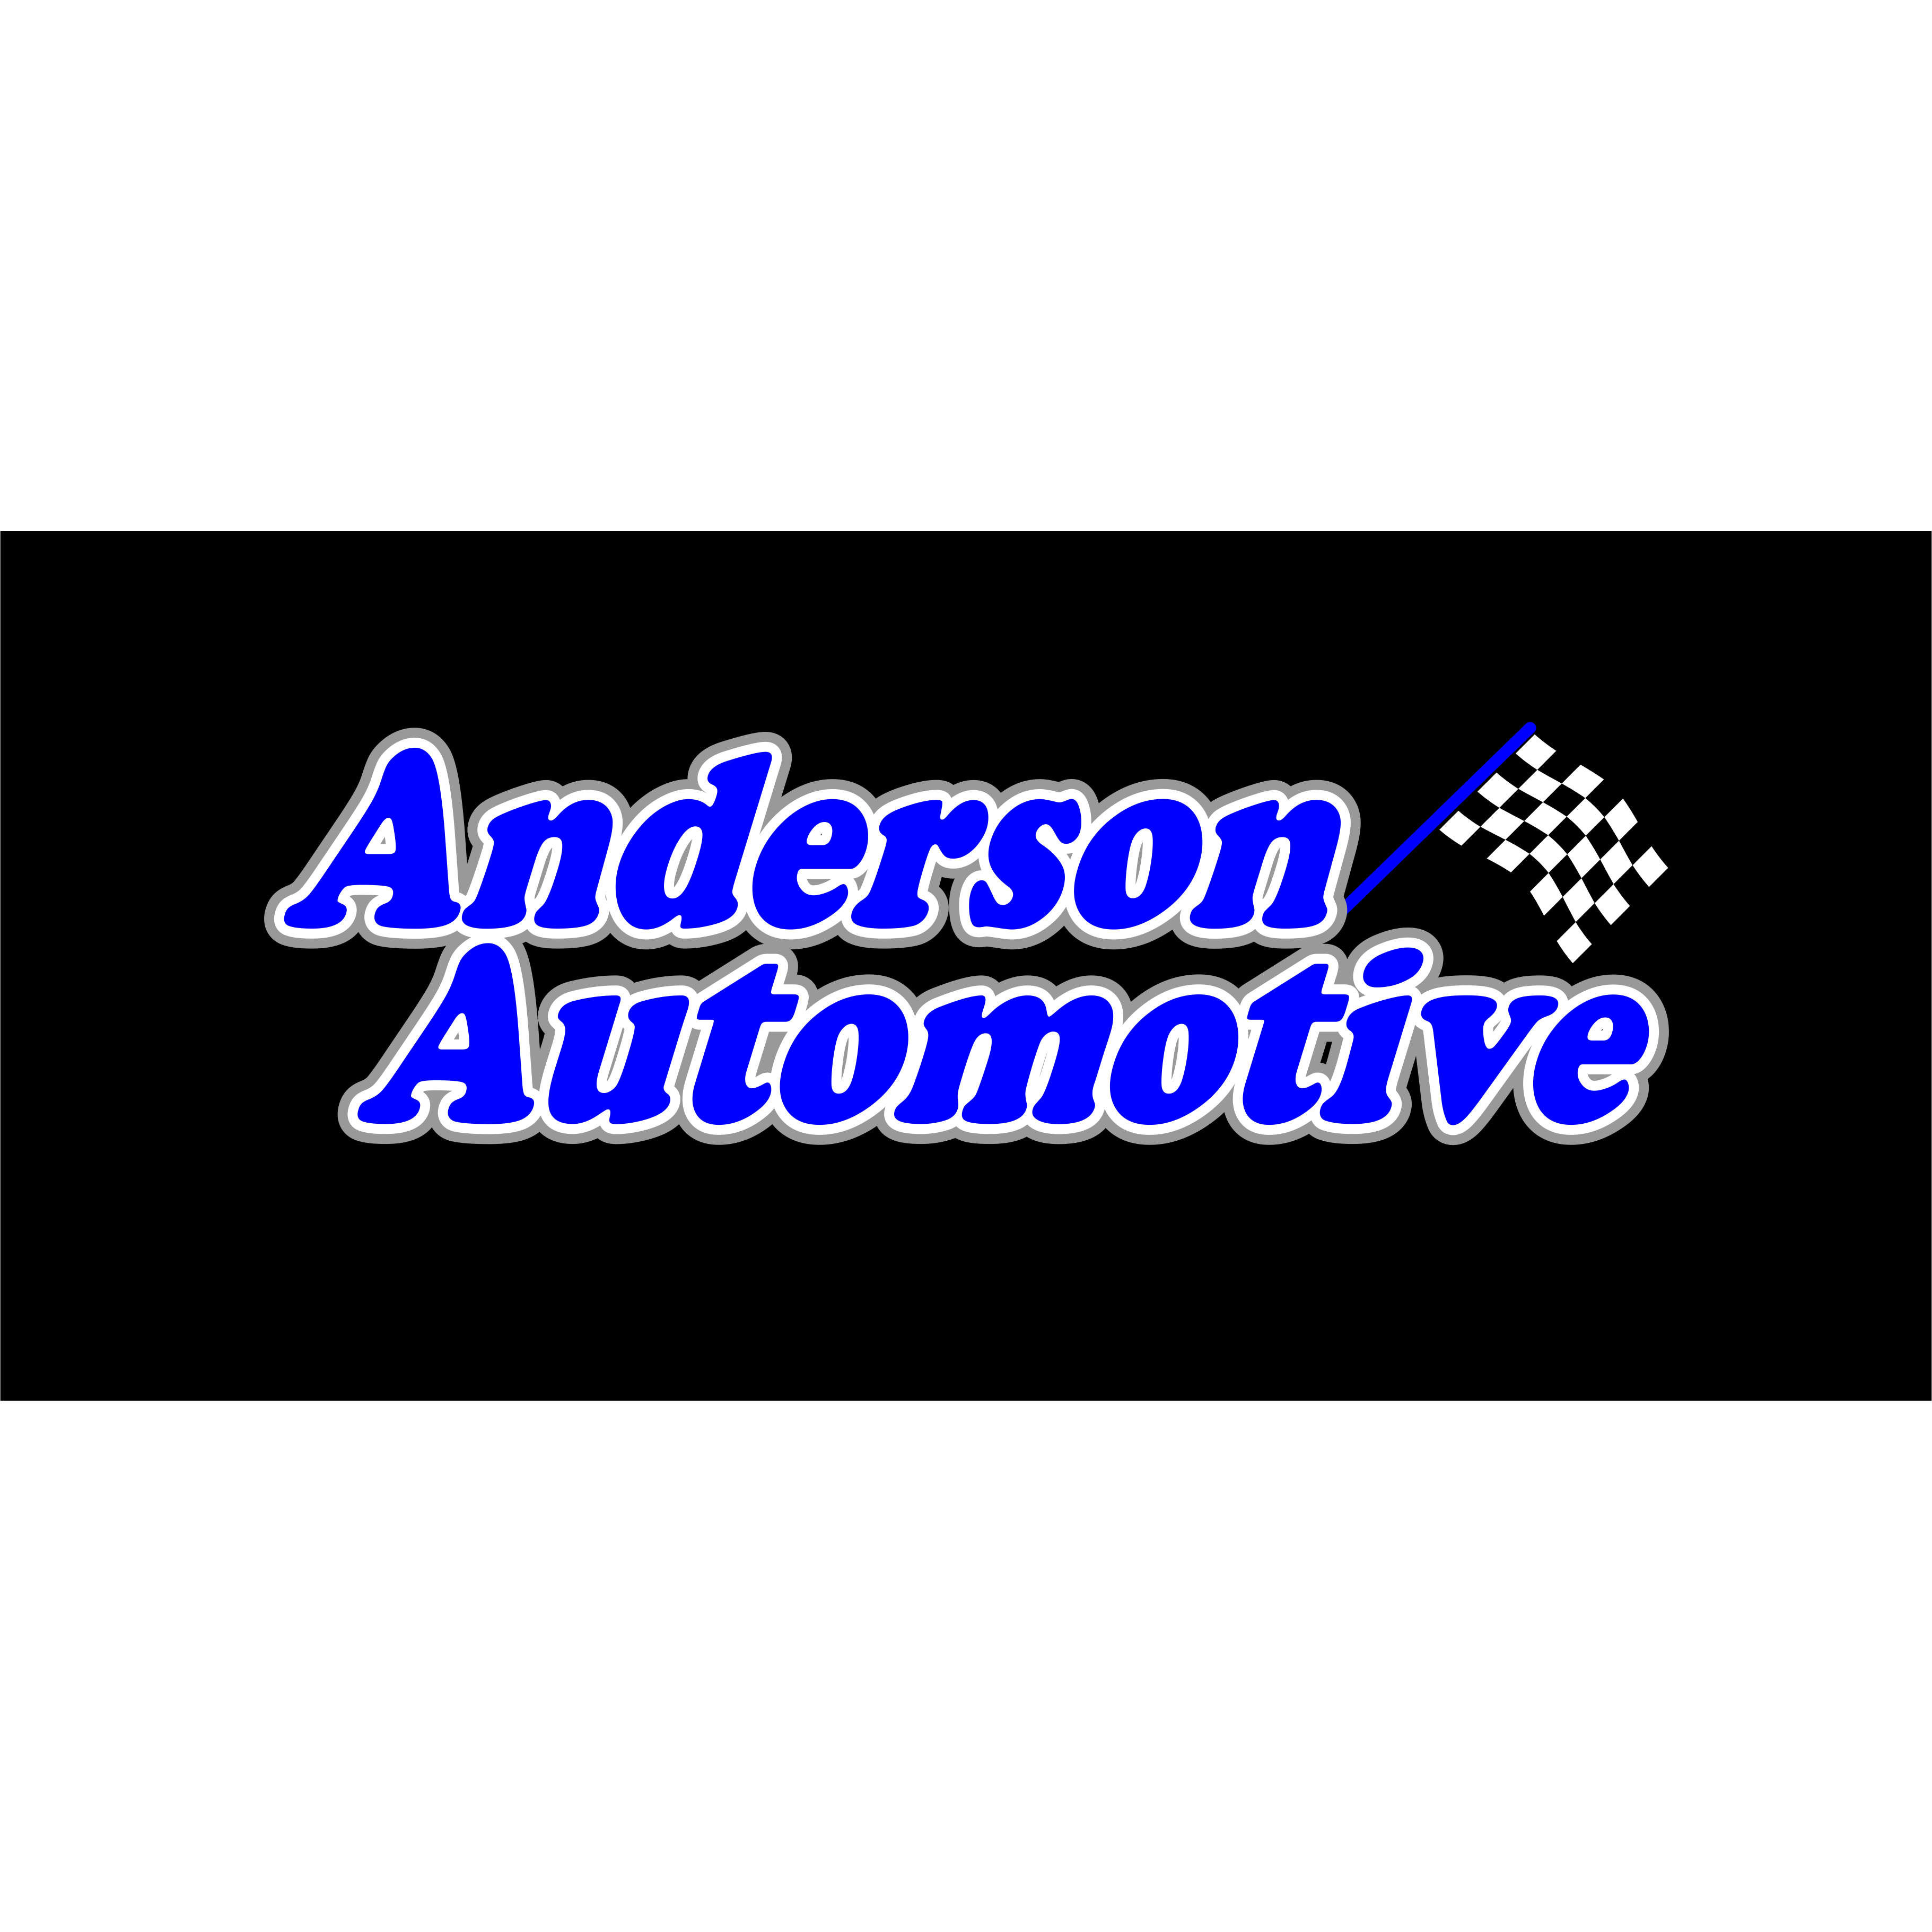 Anderson Automotive Logo